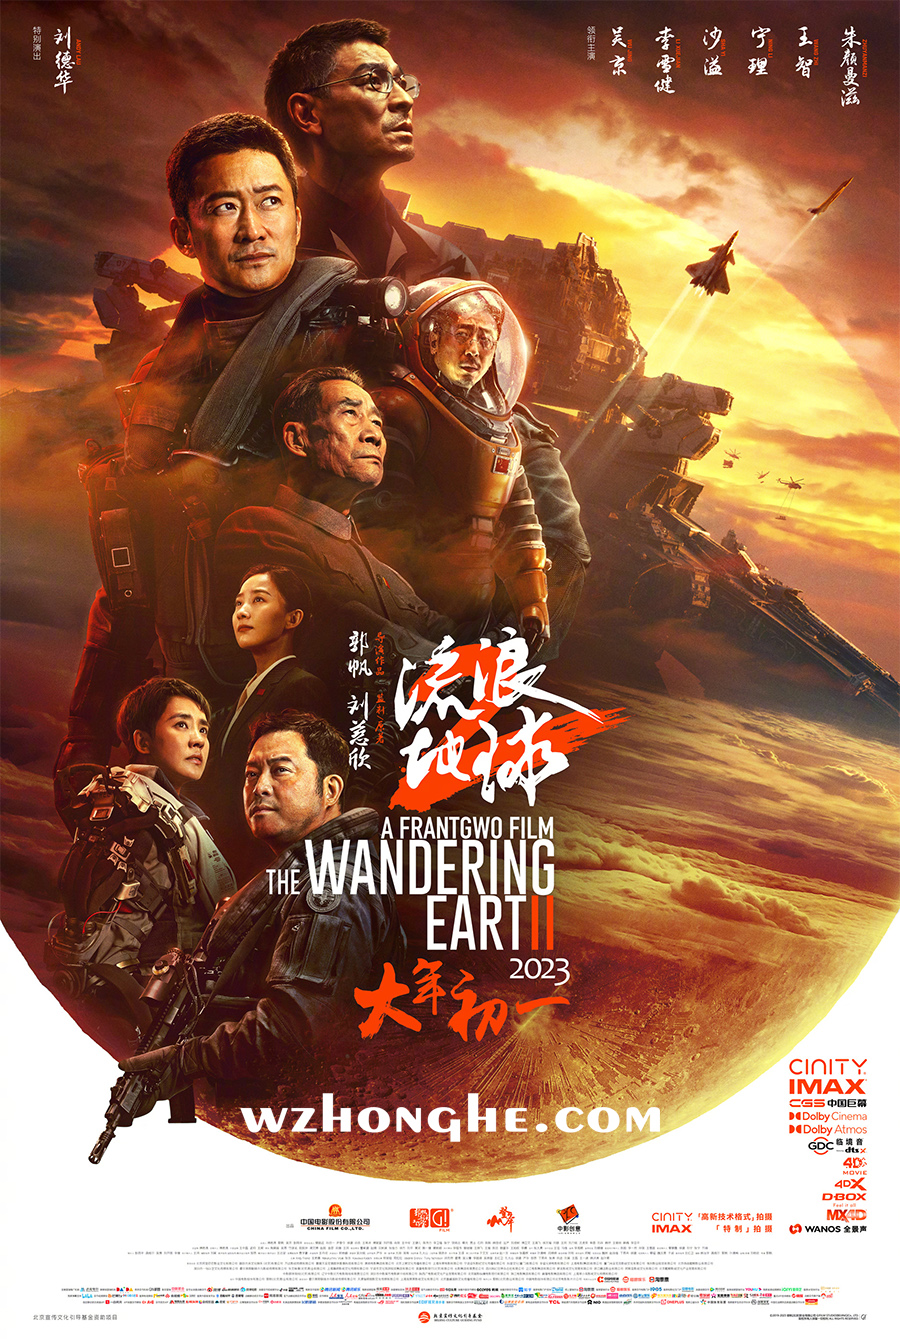 《流浪地球2》- 无中和wzhonghe.com